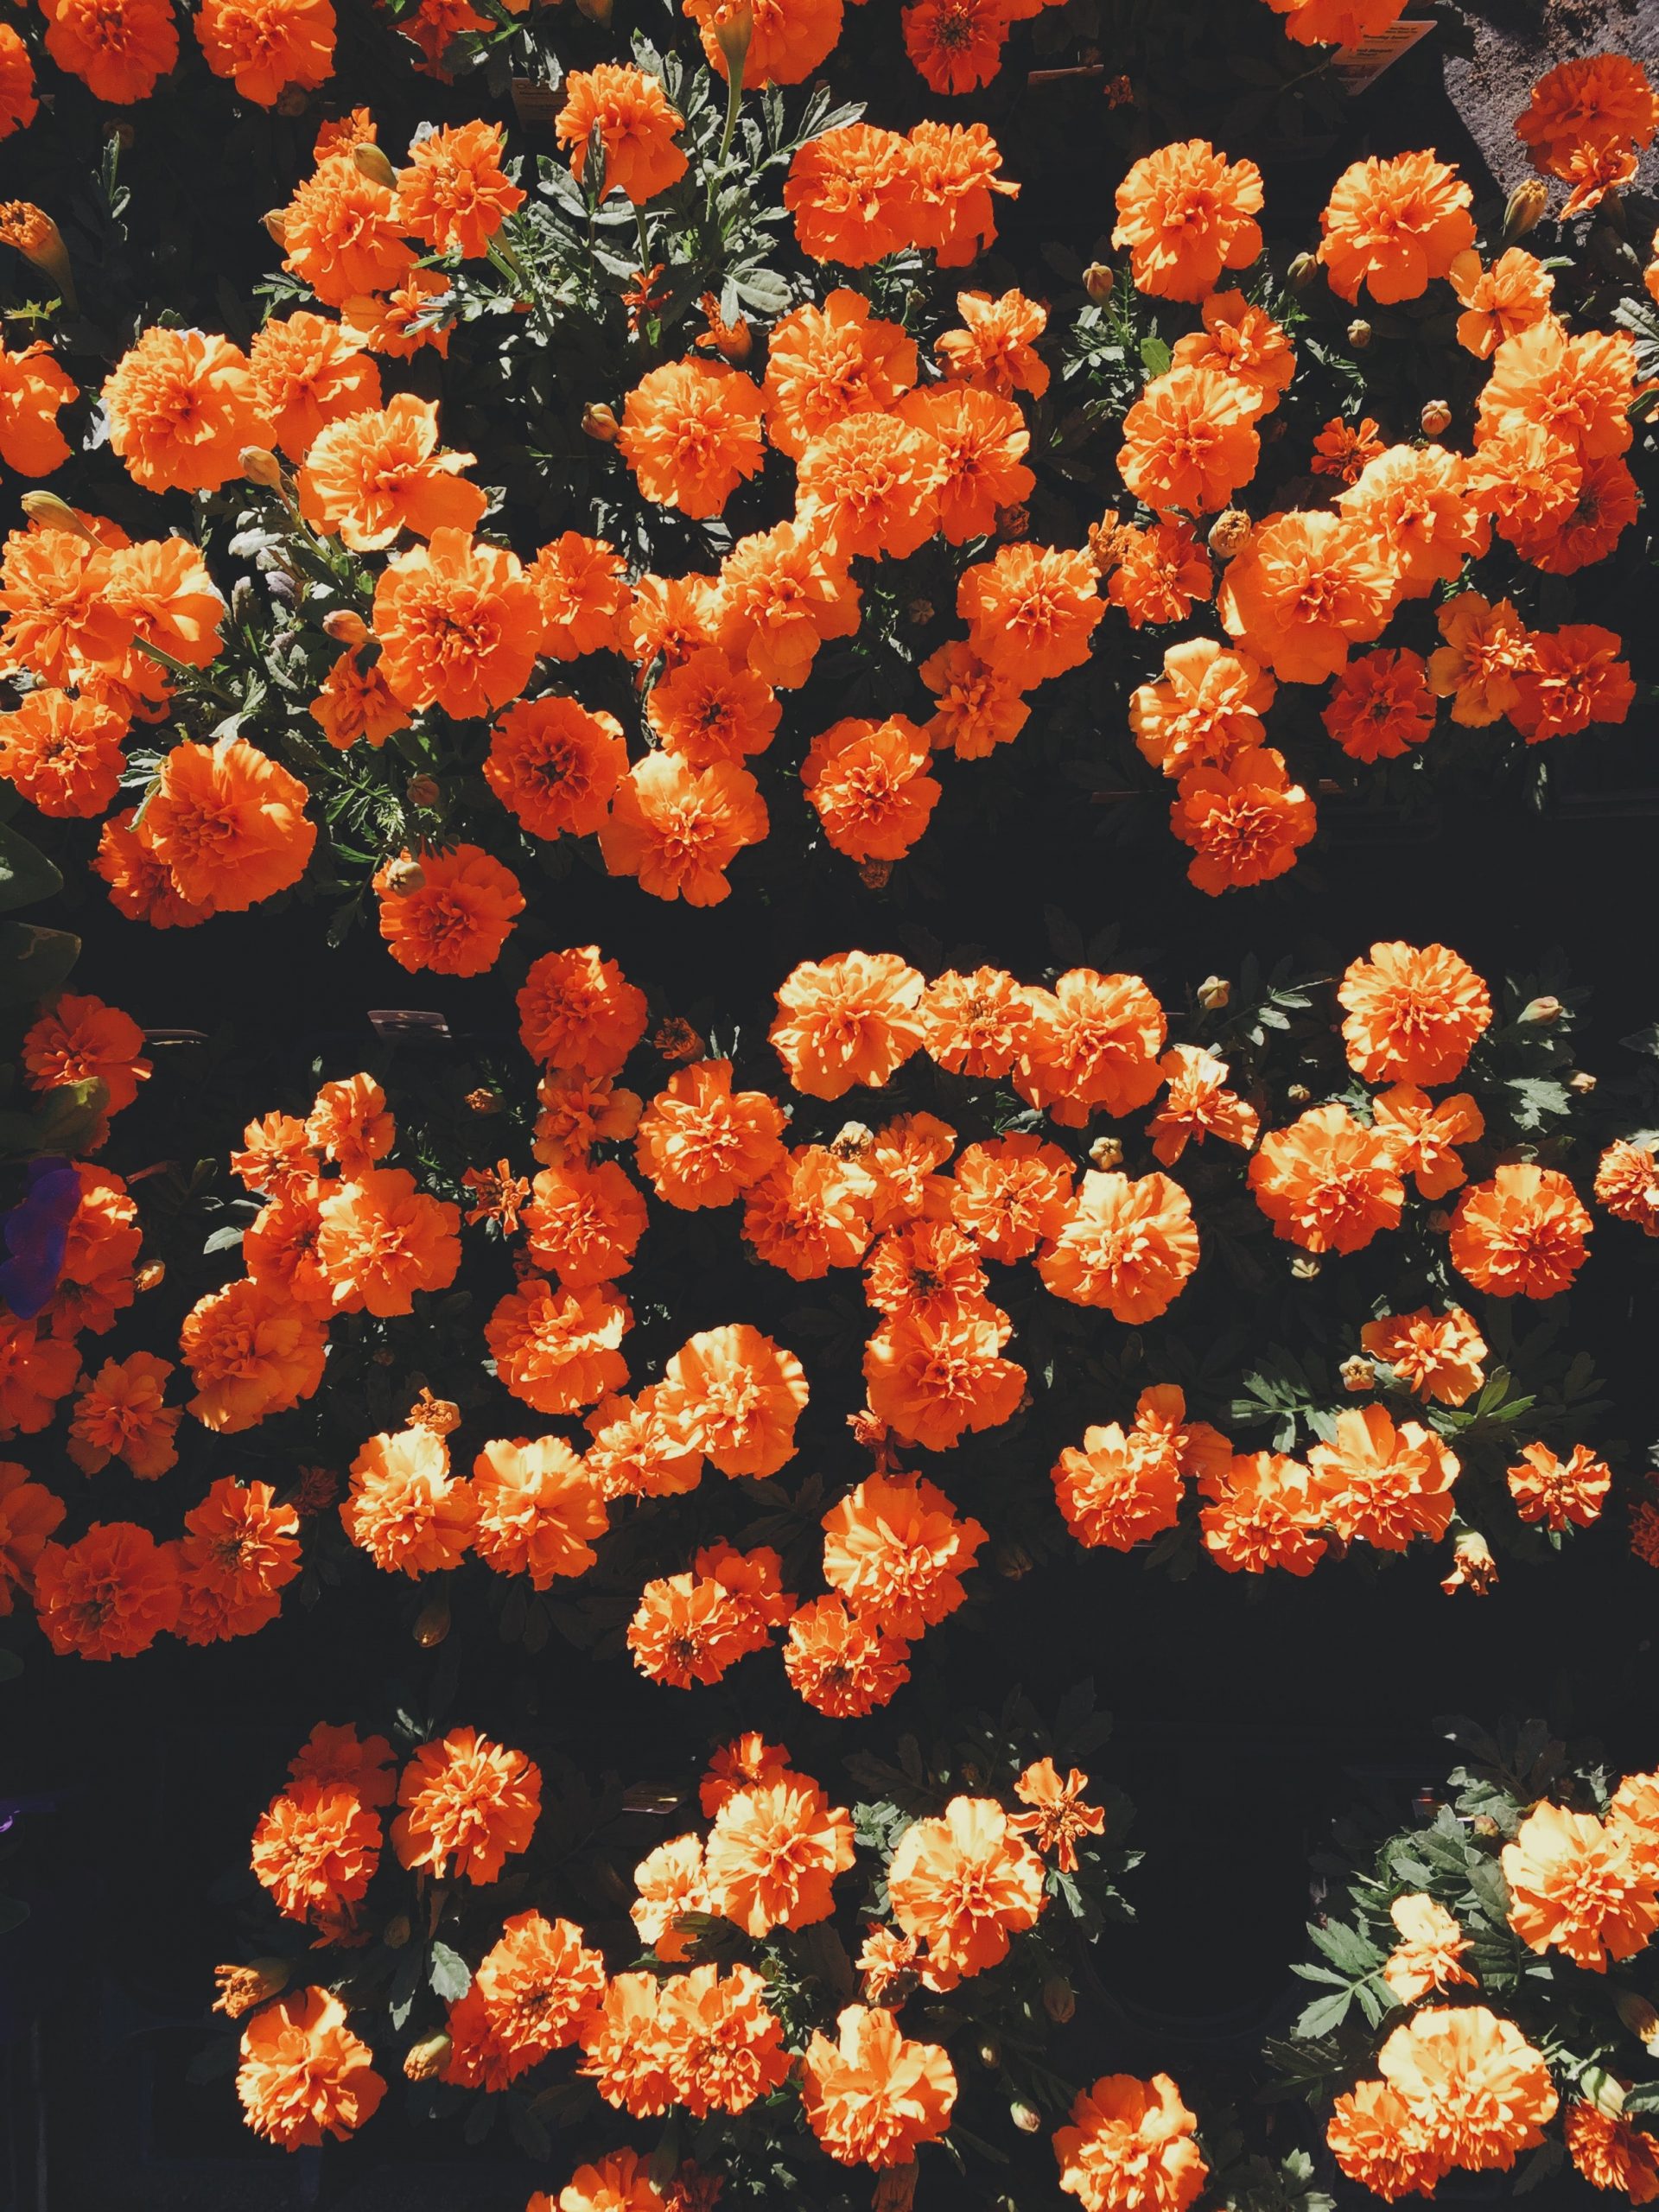 Blooming orange petaled flowers